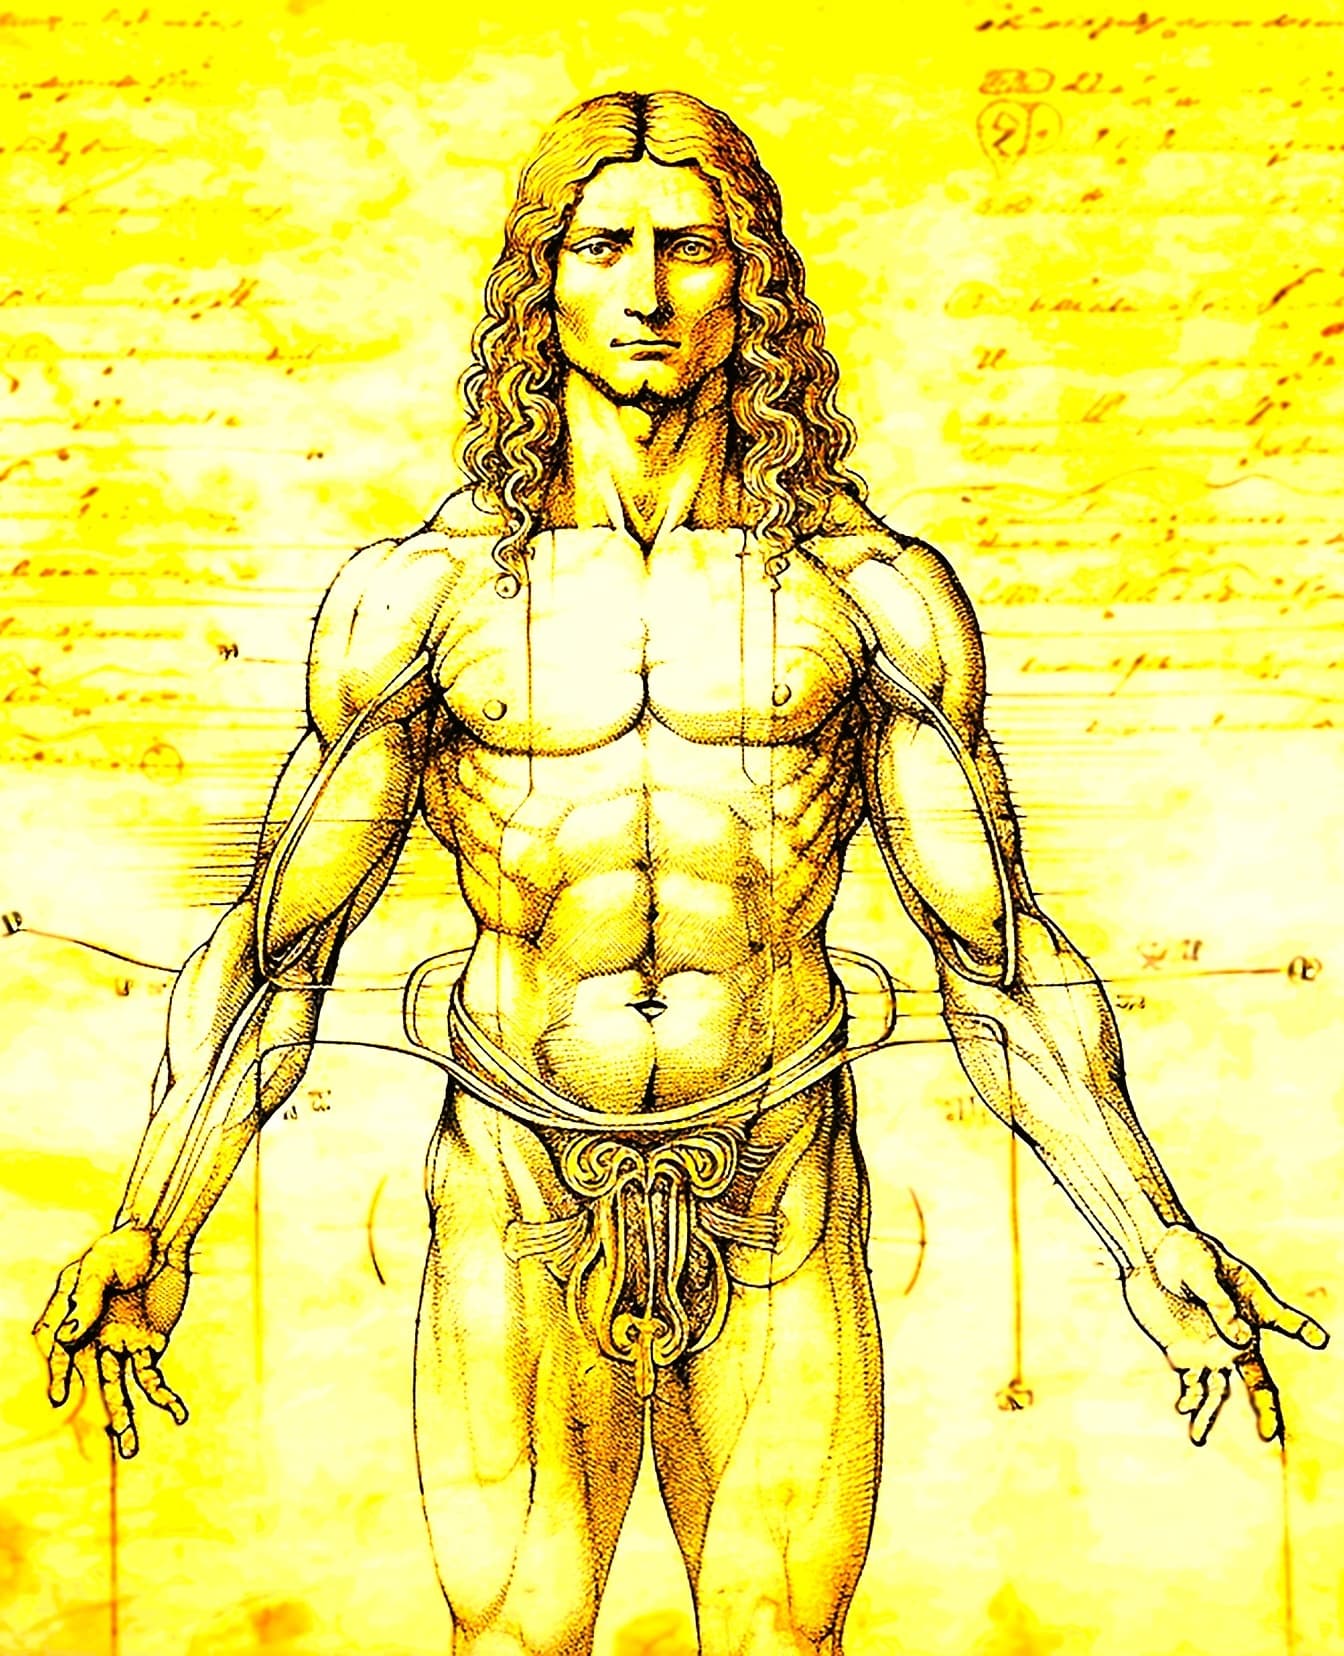 Egy izmos ember anatómiájának rajza, Leonardo da Vinci Vitruvian Man stílusában